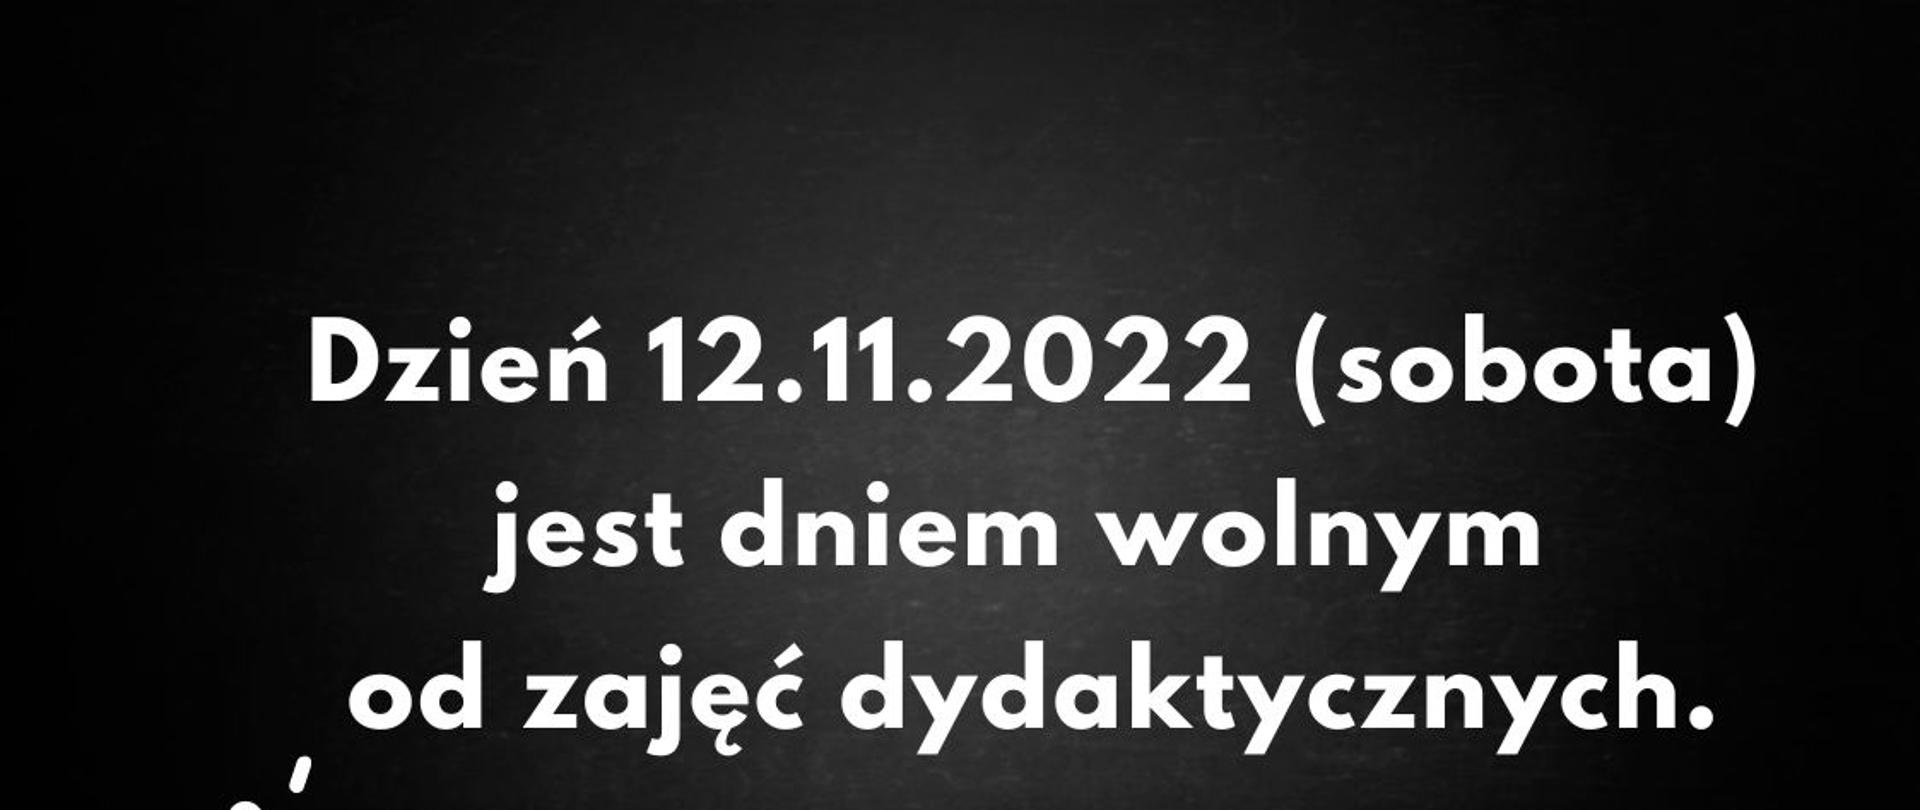 Plansza imitująca tablicę szkolną, w lewym dolnym rogu grafika białego mikrofonu. na środku tablicy tekst napisany białymi literami "Dzień 12.11.2022 (sobota) jest dniem wolnym od zajęć dydaktycznych".